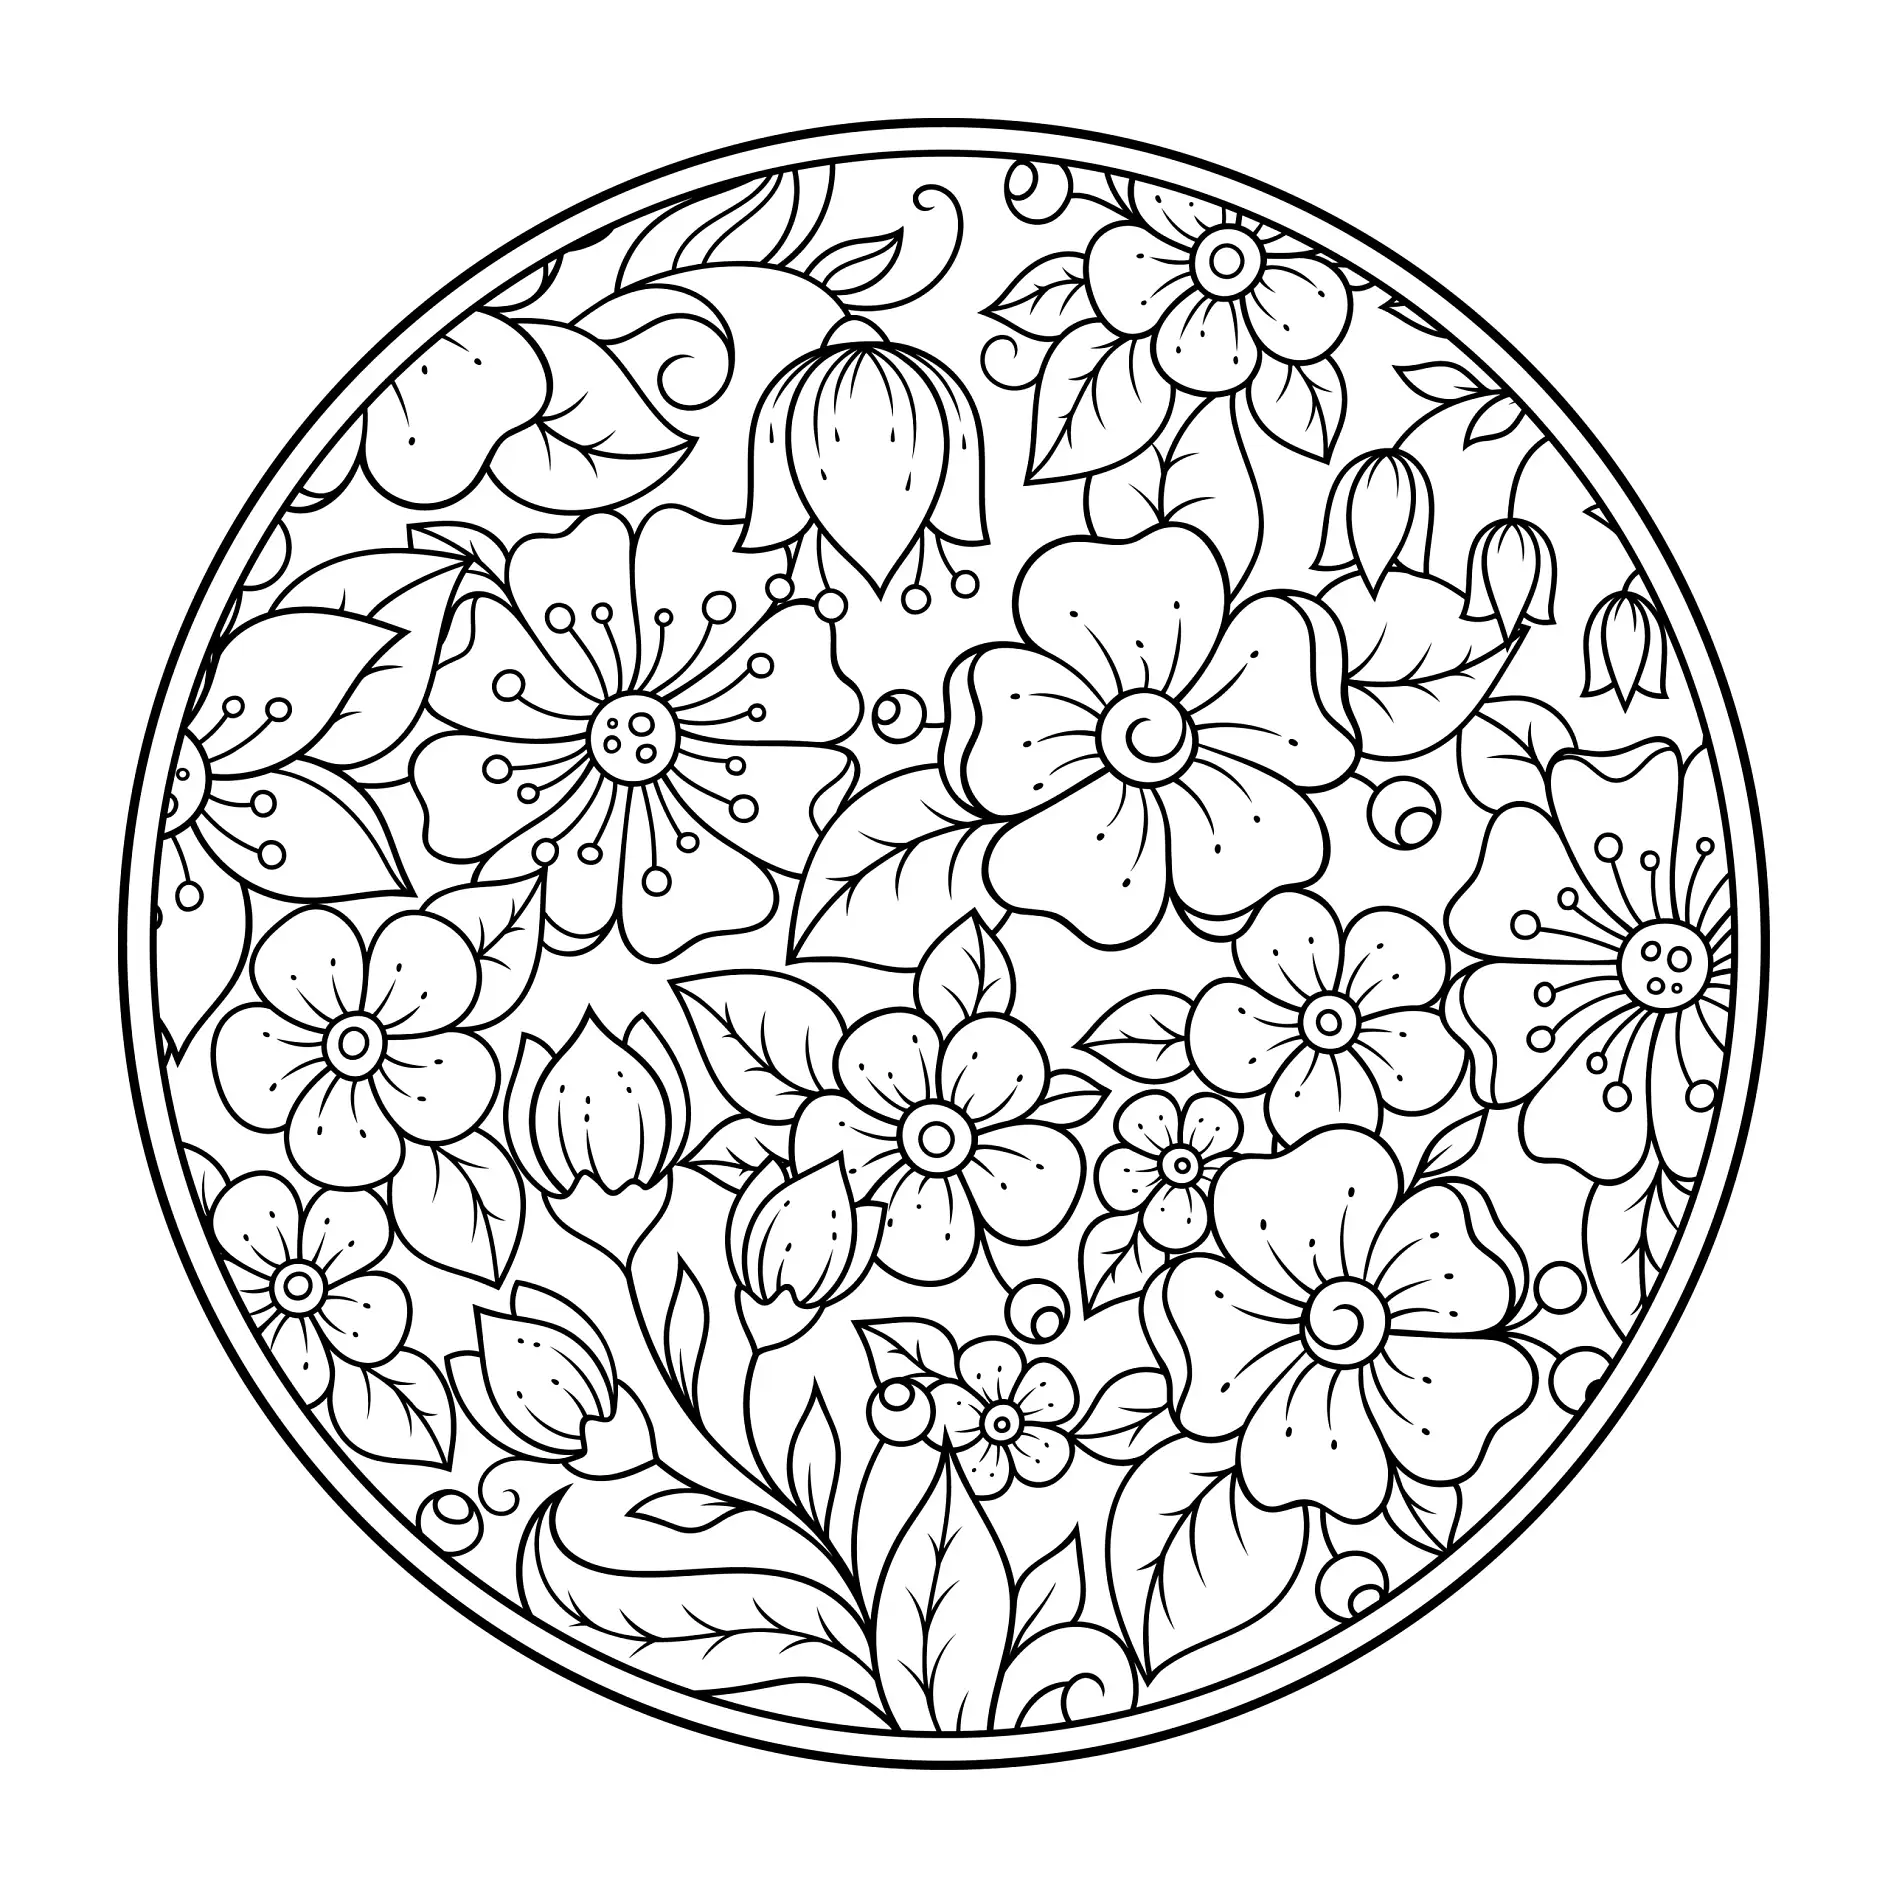 Ausmalbild Mandala mit runden Blumenmustern und Blättern